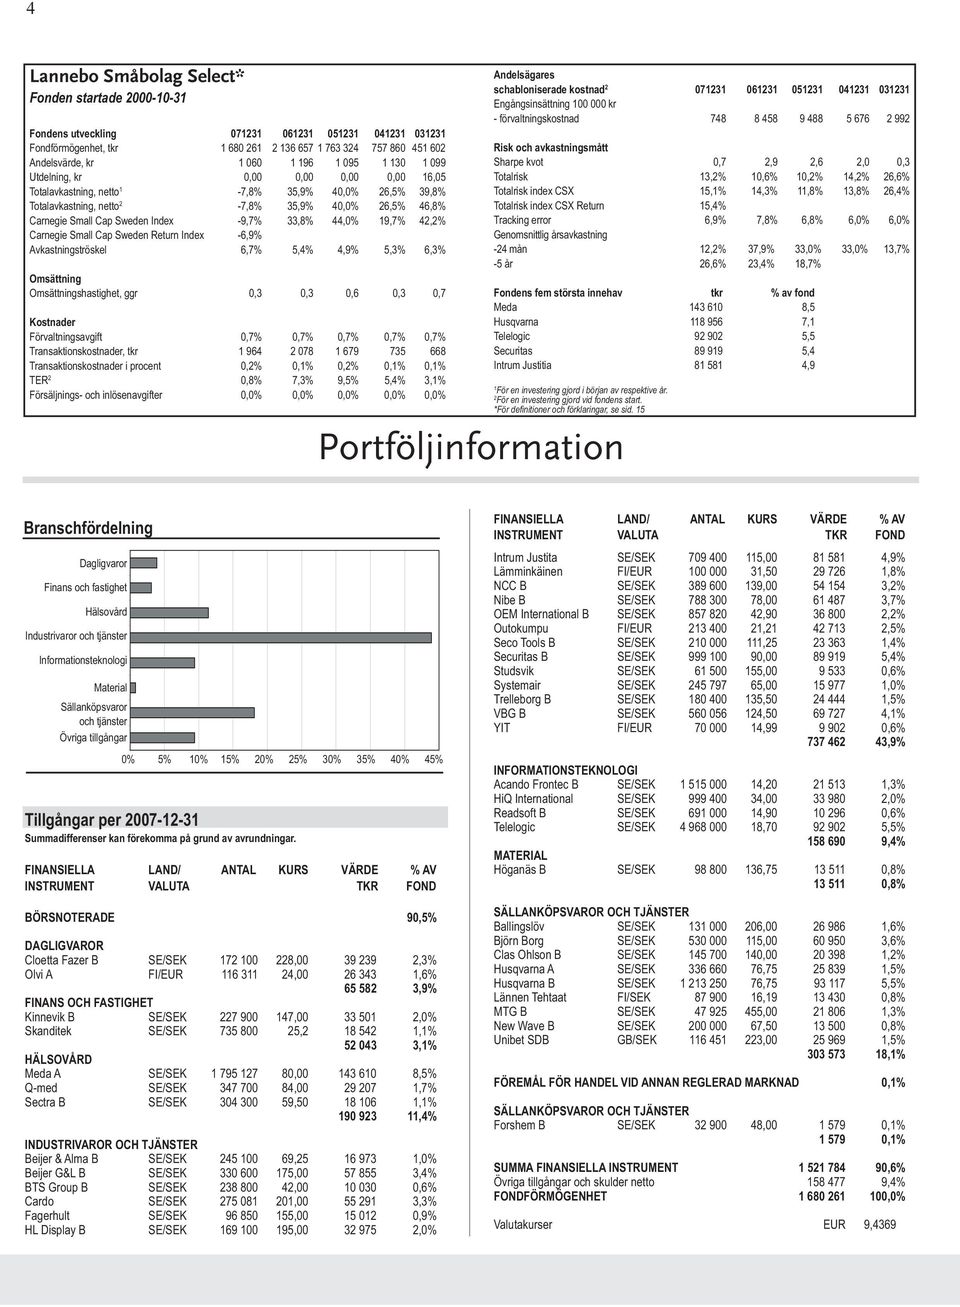 Index -9,7% 33,8% 44,0% 19,7% 42,2% Carnegie Small Cap Sweden Return Index -6,9% Avkastningströskel 6,7% 5,4% 4,9% 5,3% 6,3% Omsättning Omsättningshastighet, ggr 0,3 0,3 0,6 0,3 0,7 Kostnader